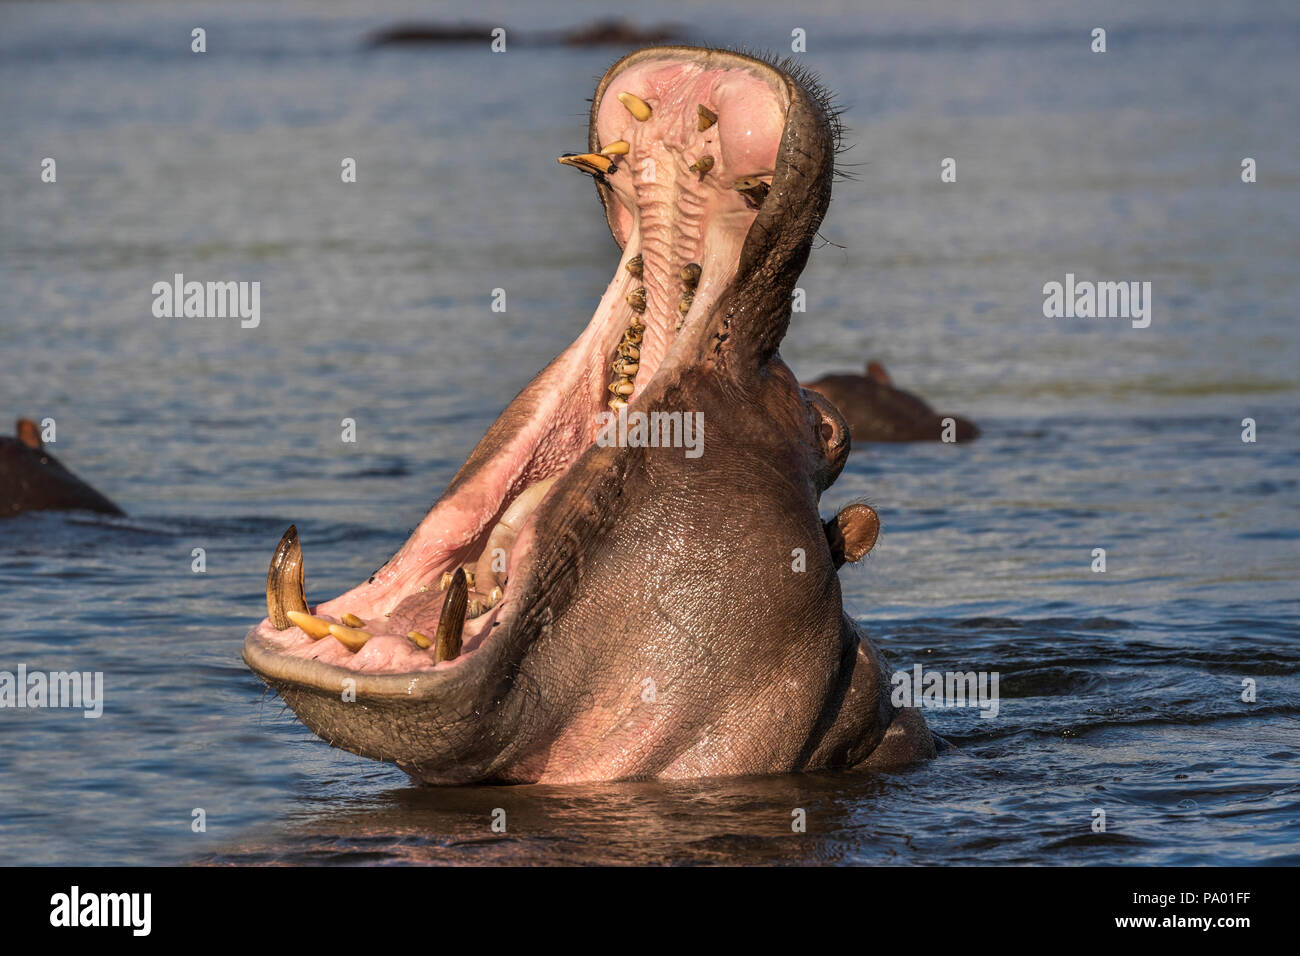 Hippo (Hippopotamus amphibius) yawning, Chobe river, Botswana Stock Photo